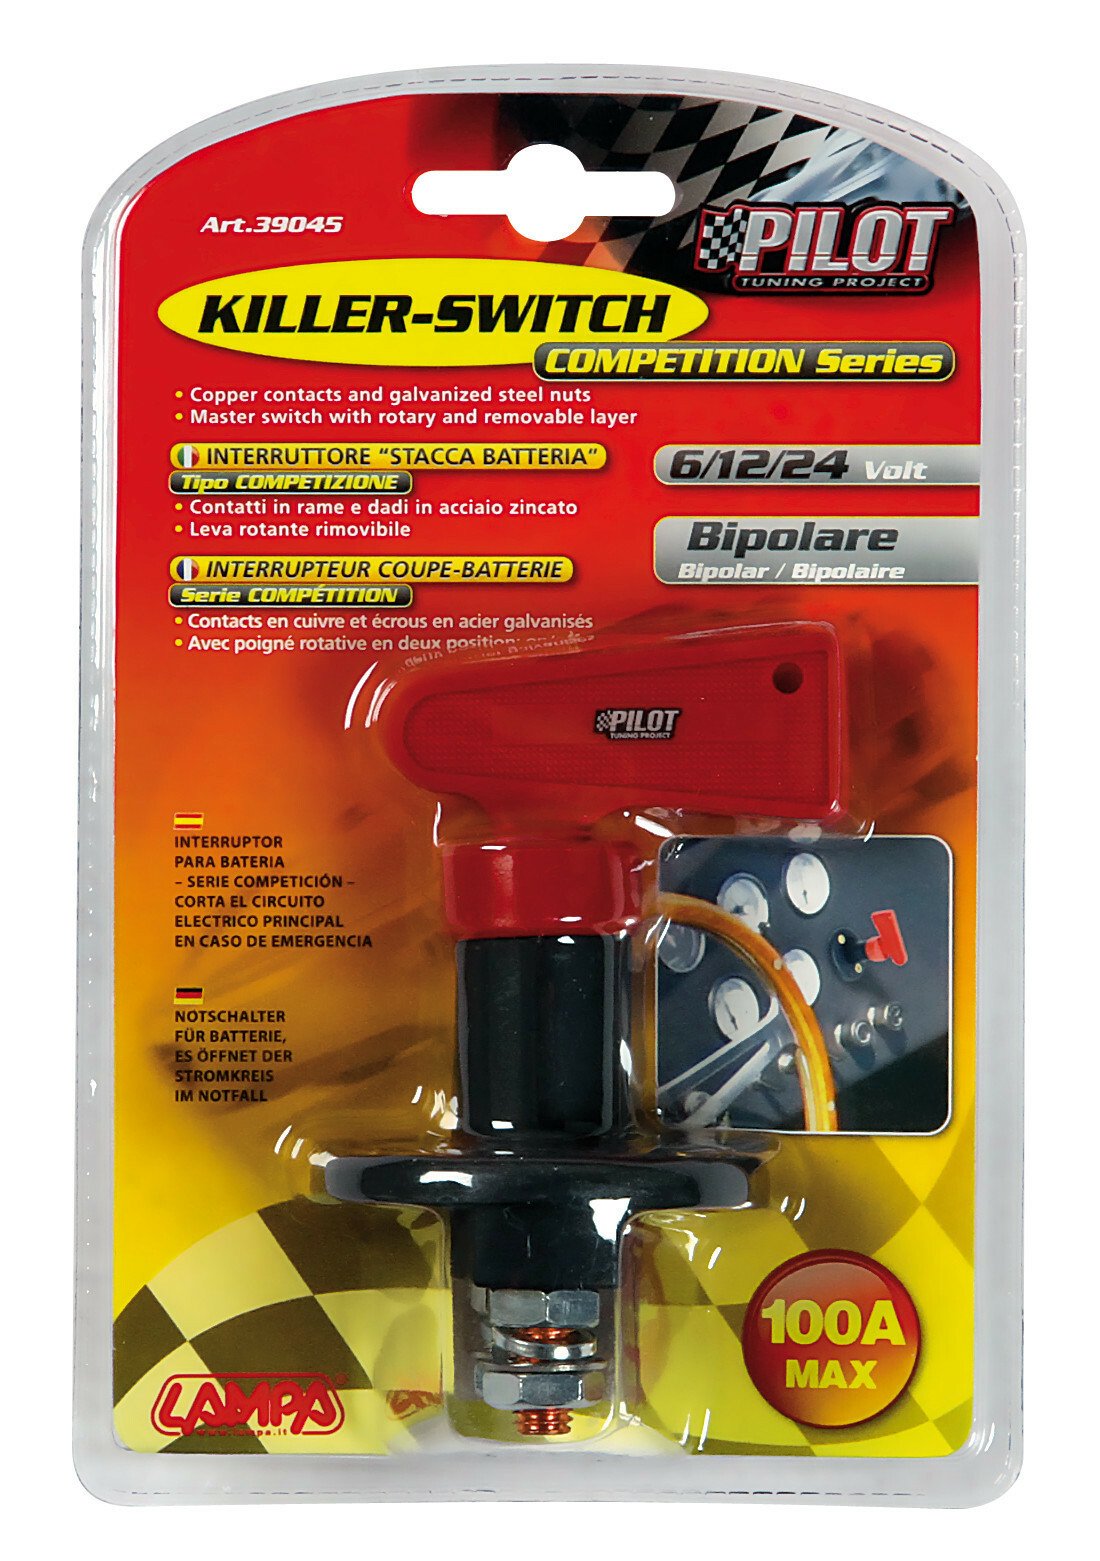 Killer-Switch - 6/12/24V thumb